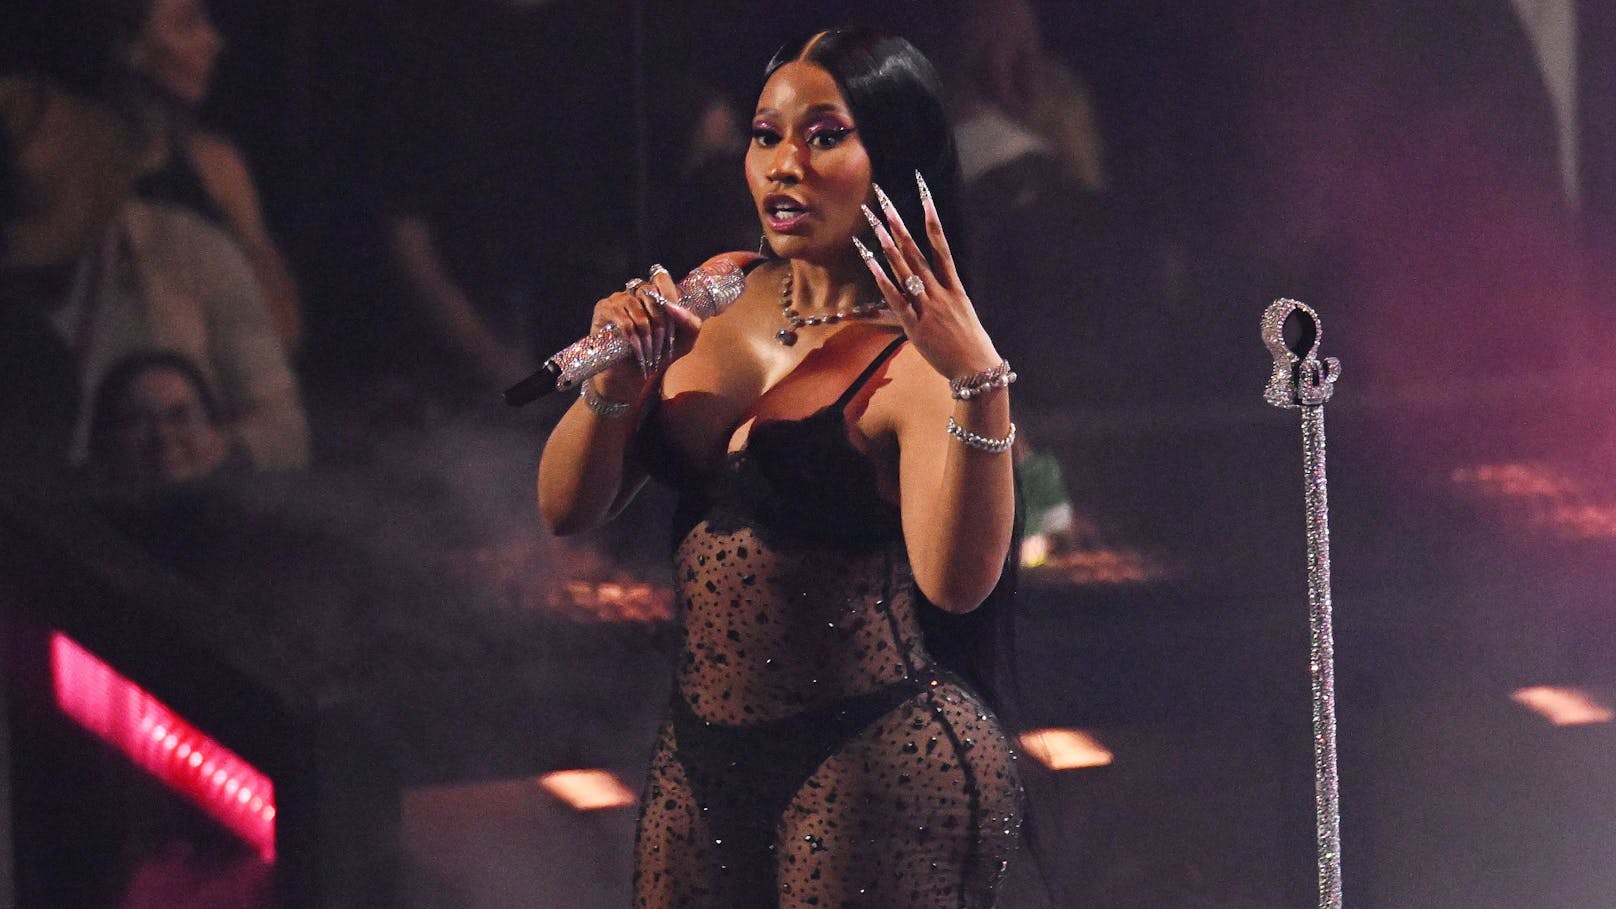 Nach Festnahme: Nicki Minaj entschuldigt sich bei Fans